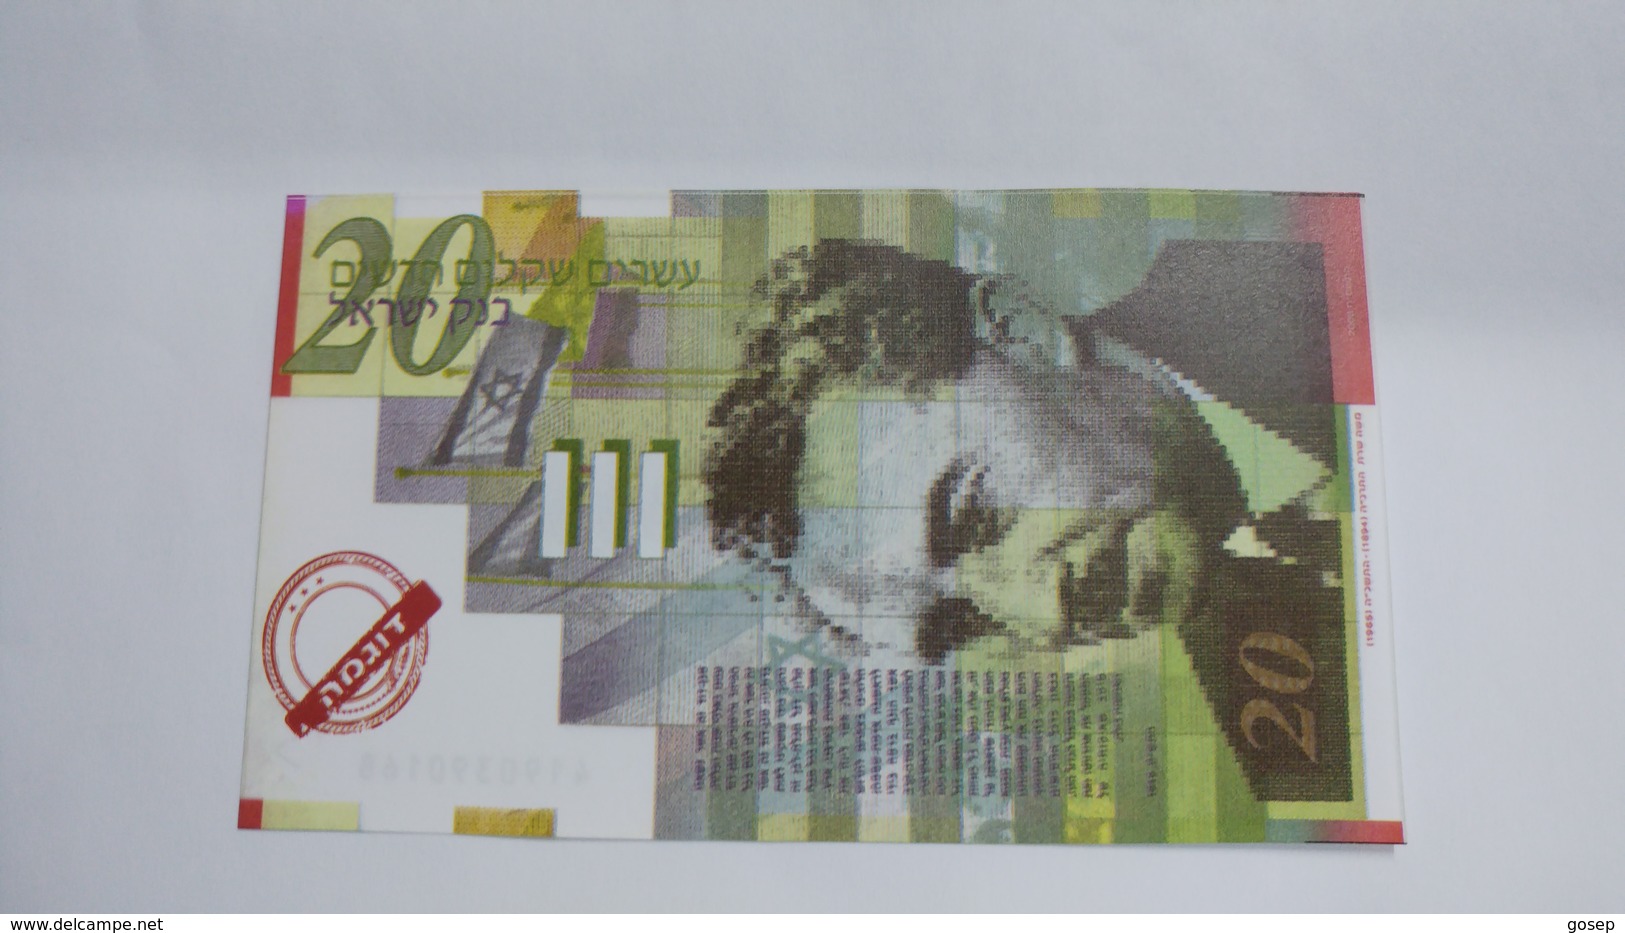 Israel-bank Note-20new Sheqalim-(sample)-note - Israel